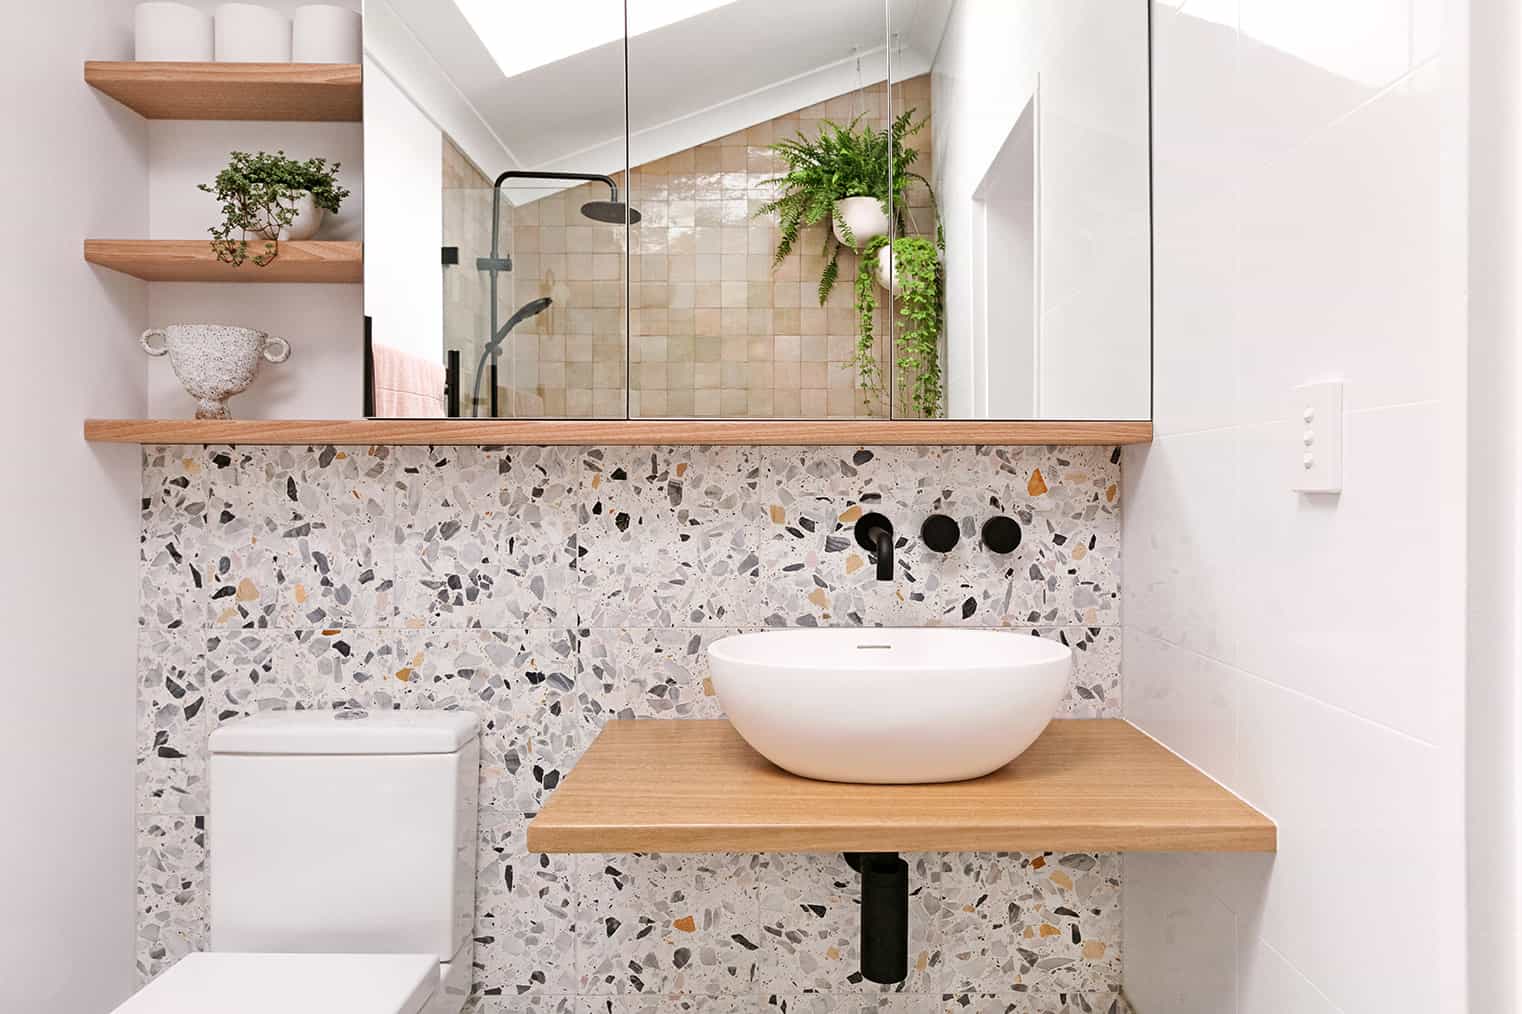 A minimalist bathroom with terrazzo slabs